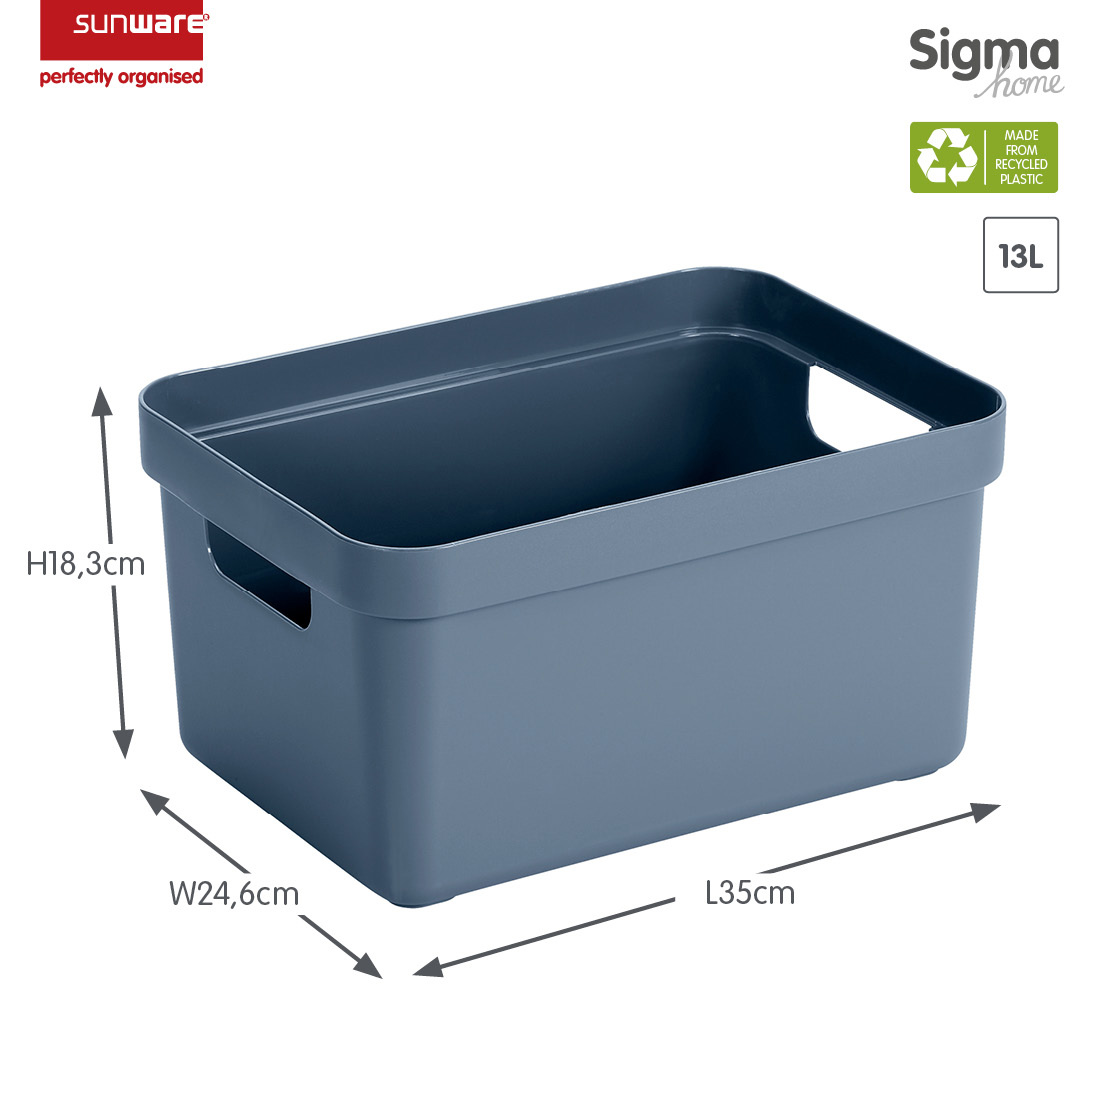 Sigma home Aufbewahrungsbox 13L dunkel blaugrau